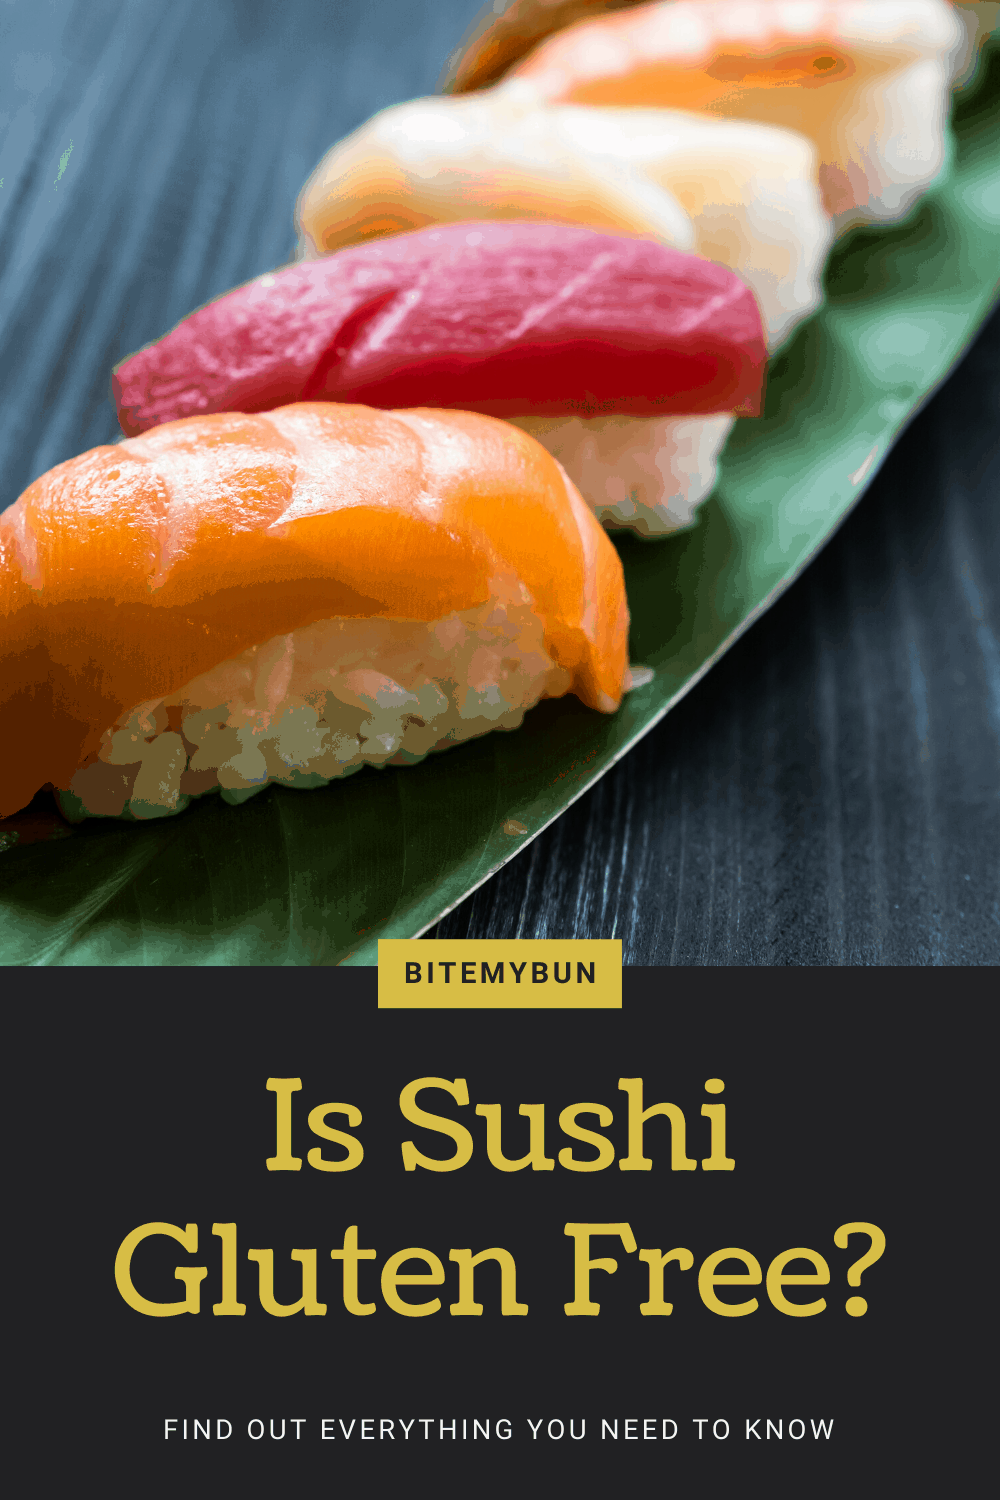 ¿El sushi no contiene gluten?